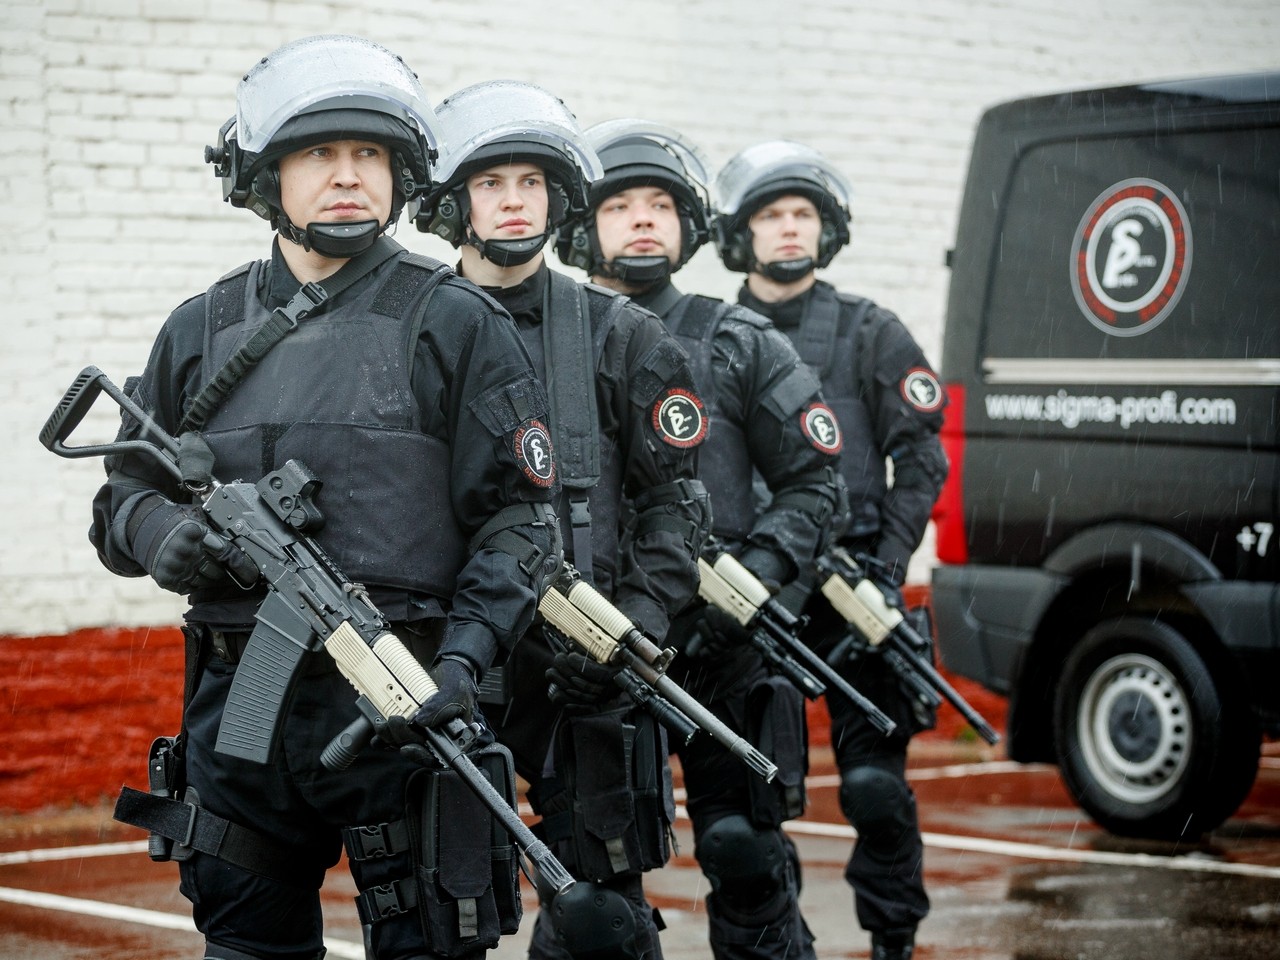 Федеральные охранные организации. Группа ГБР спецназ. Вооруженная охрана ГБР. ГБР Сигма. Охранник с оружием.